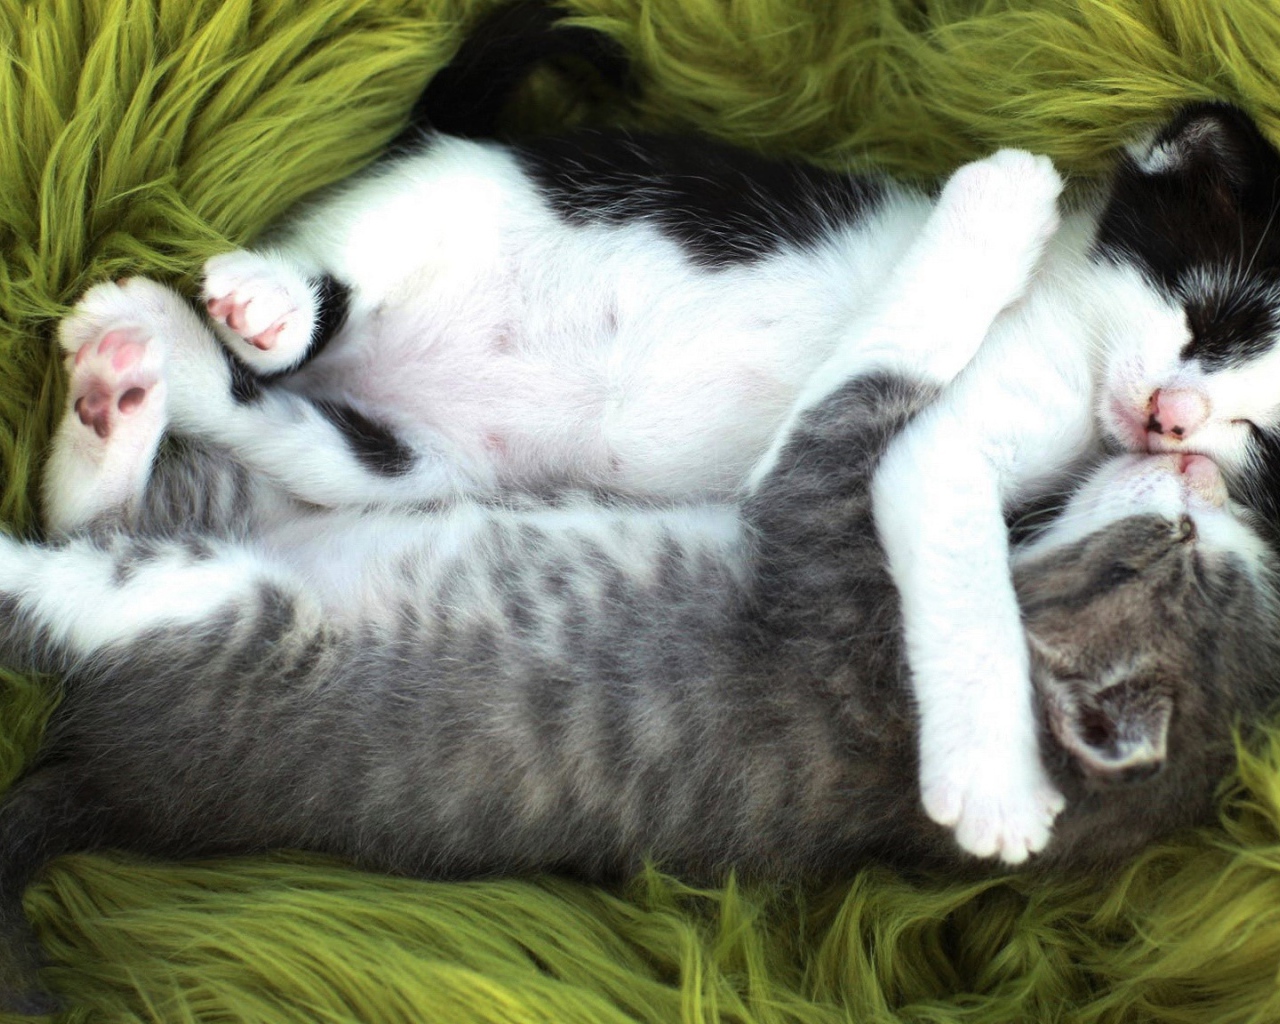 Два маленьких забавных котенка спят обнявшись